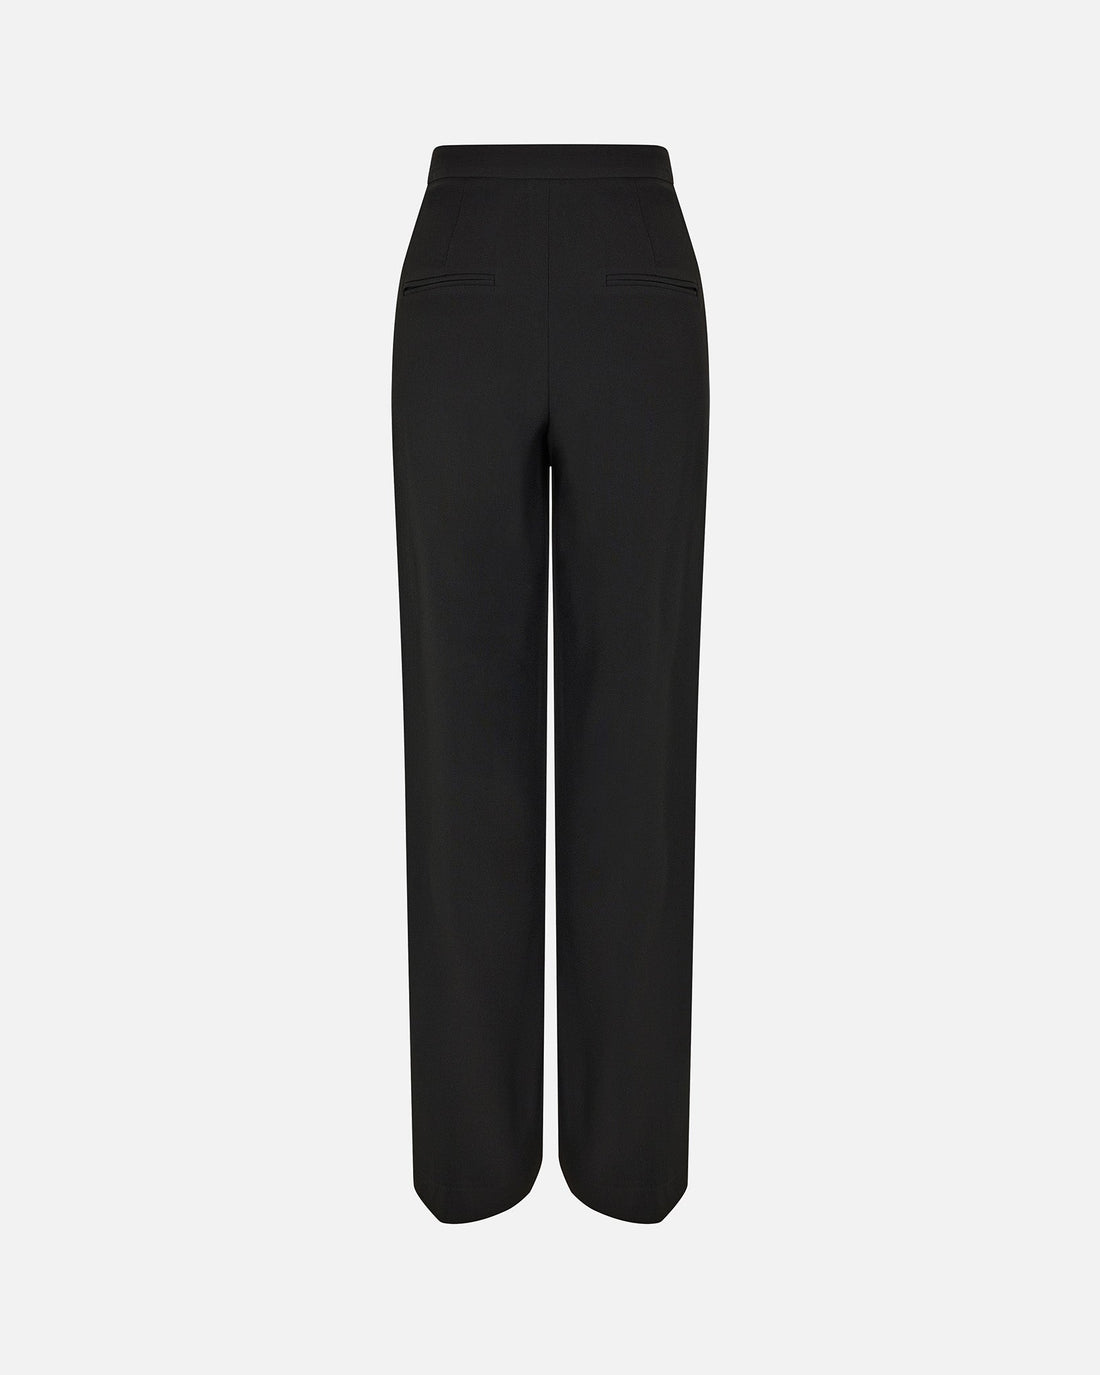 Trousers FOUQUET - PALLAS PARIS -  - 22H, BLACK, FOUQUET, SATIN MAT, SEASONAL, TROUSERS